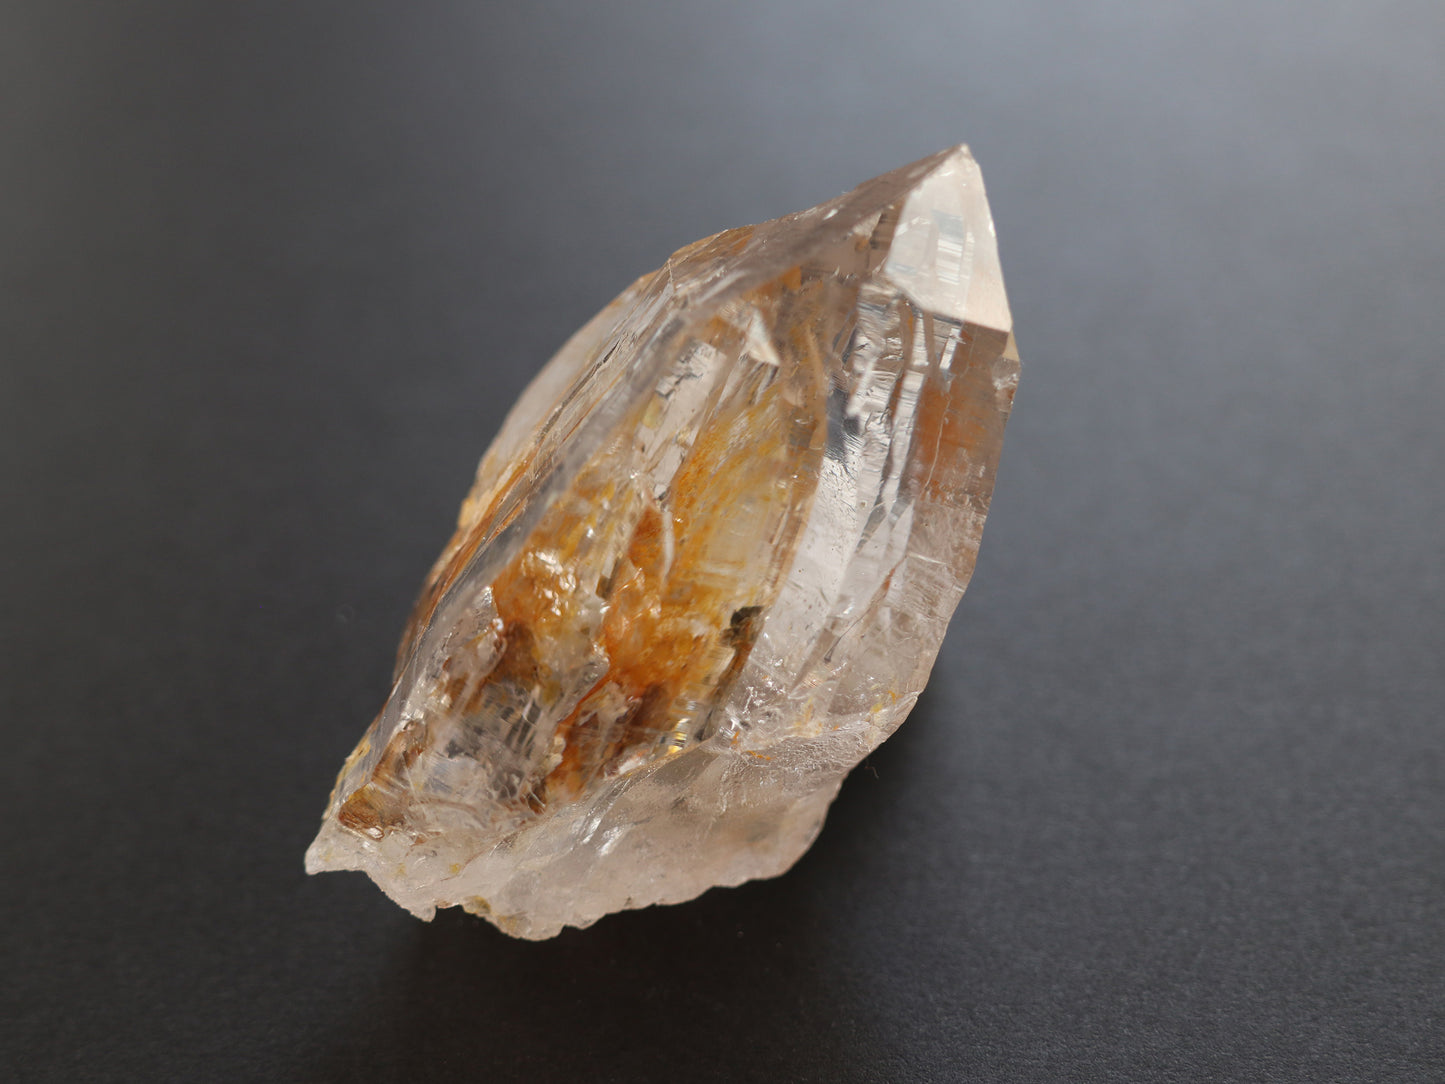 イエロー水晶、マウンテンシャドー、ガネーシュヒマール産ヒマラヤ水晶PN:GG-324